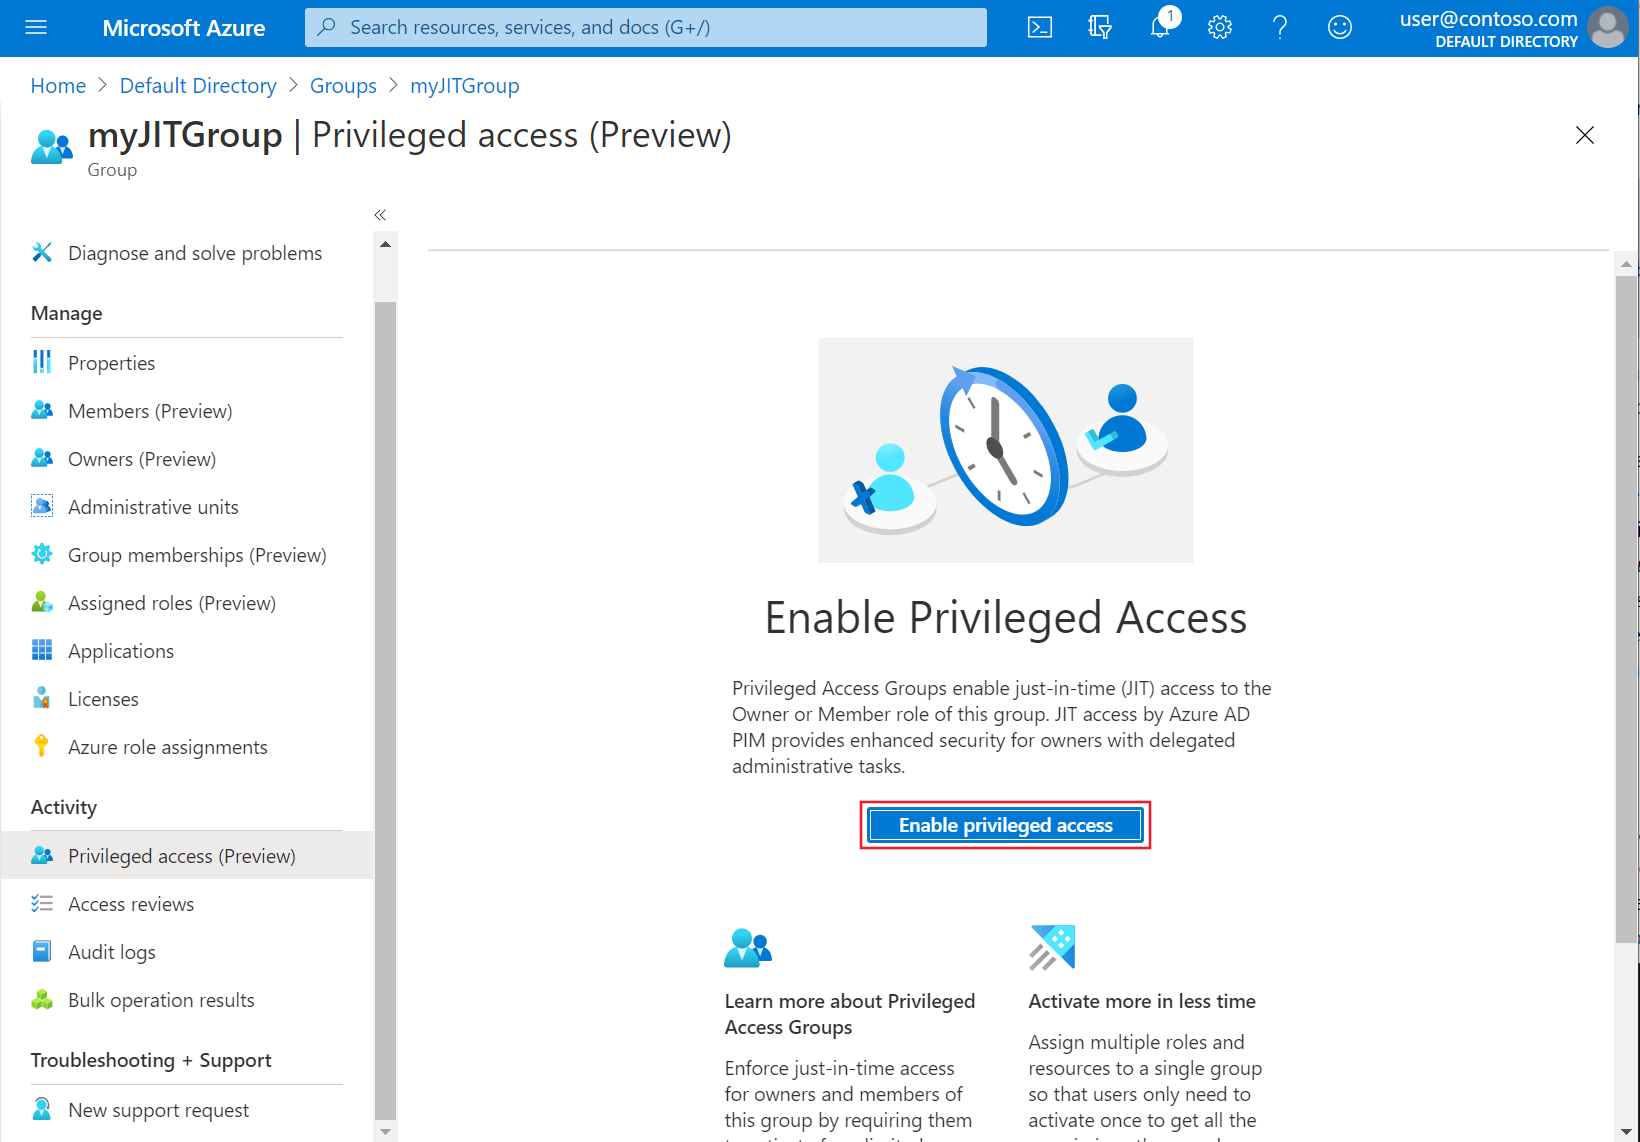 Se muestra la página Privileged Access (Preview) (Acceso con privilegios [versión preliminar]) de Azure Portal, con 